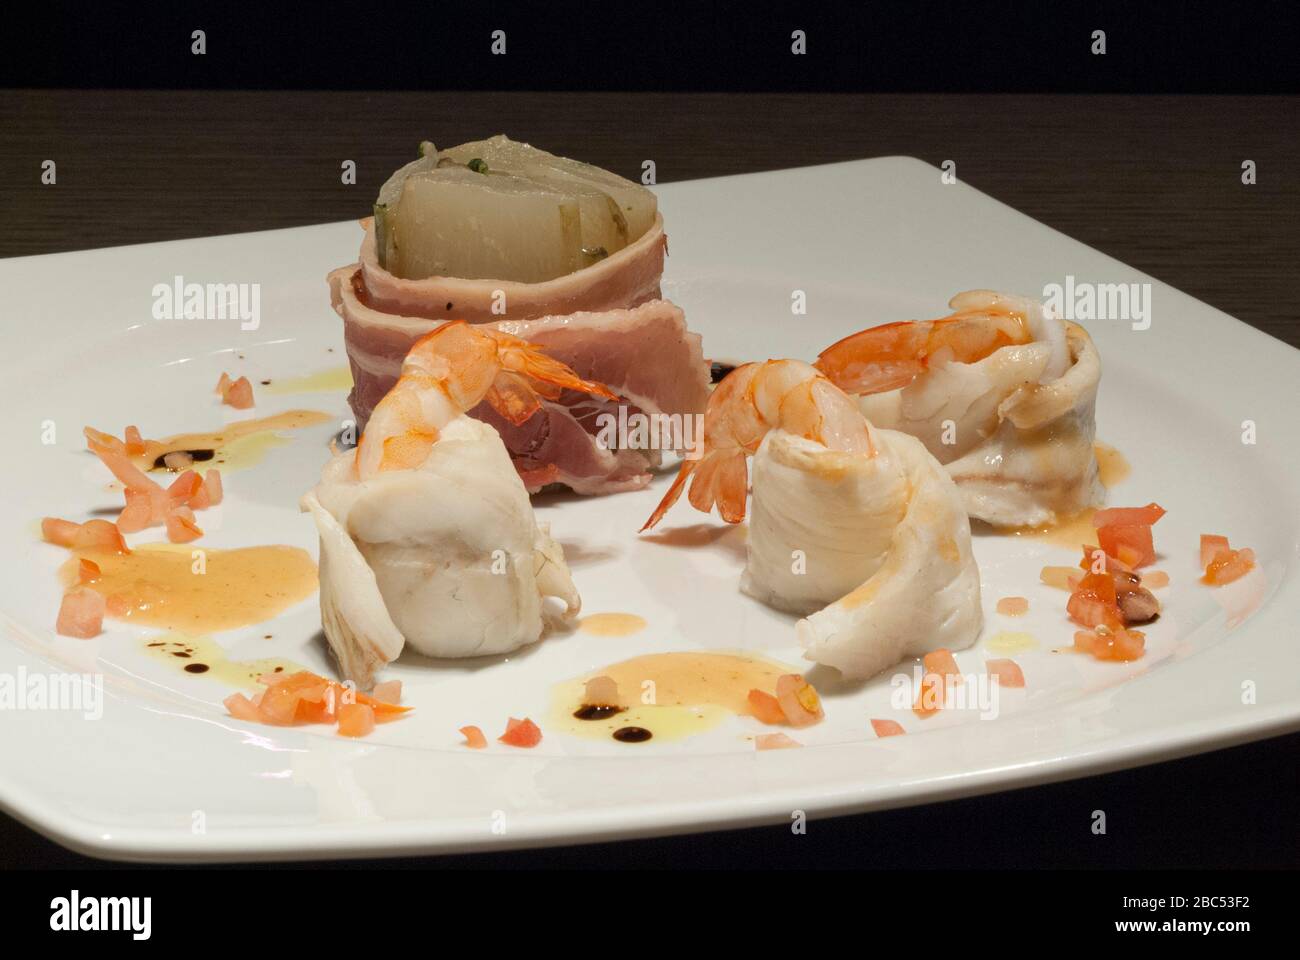 Piatto fusion cuisine - gamberi, pesce, carote Foto Stock